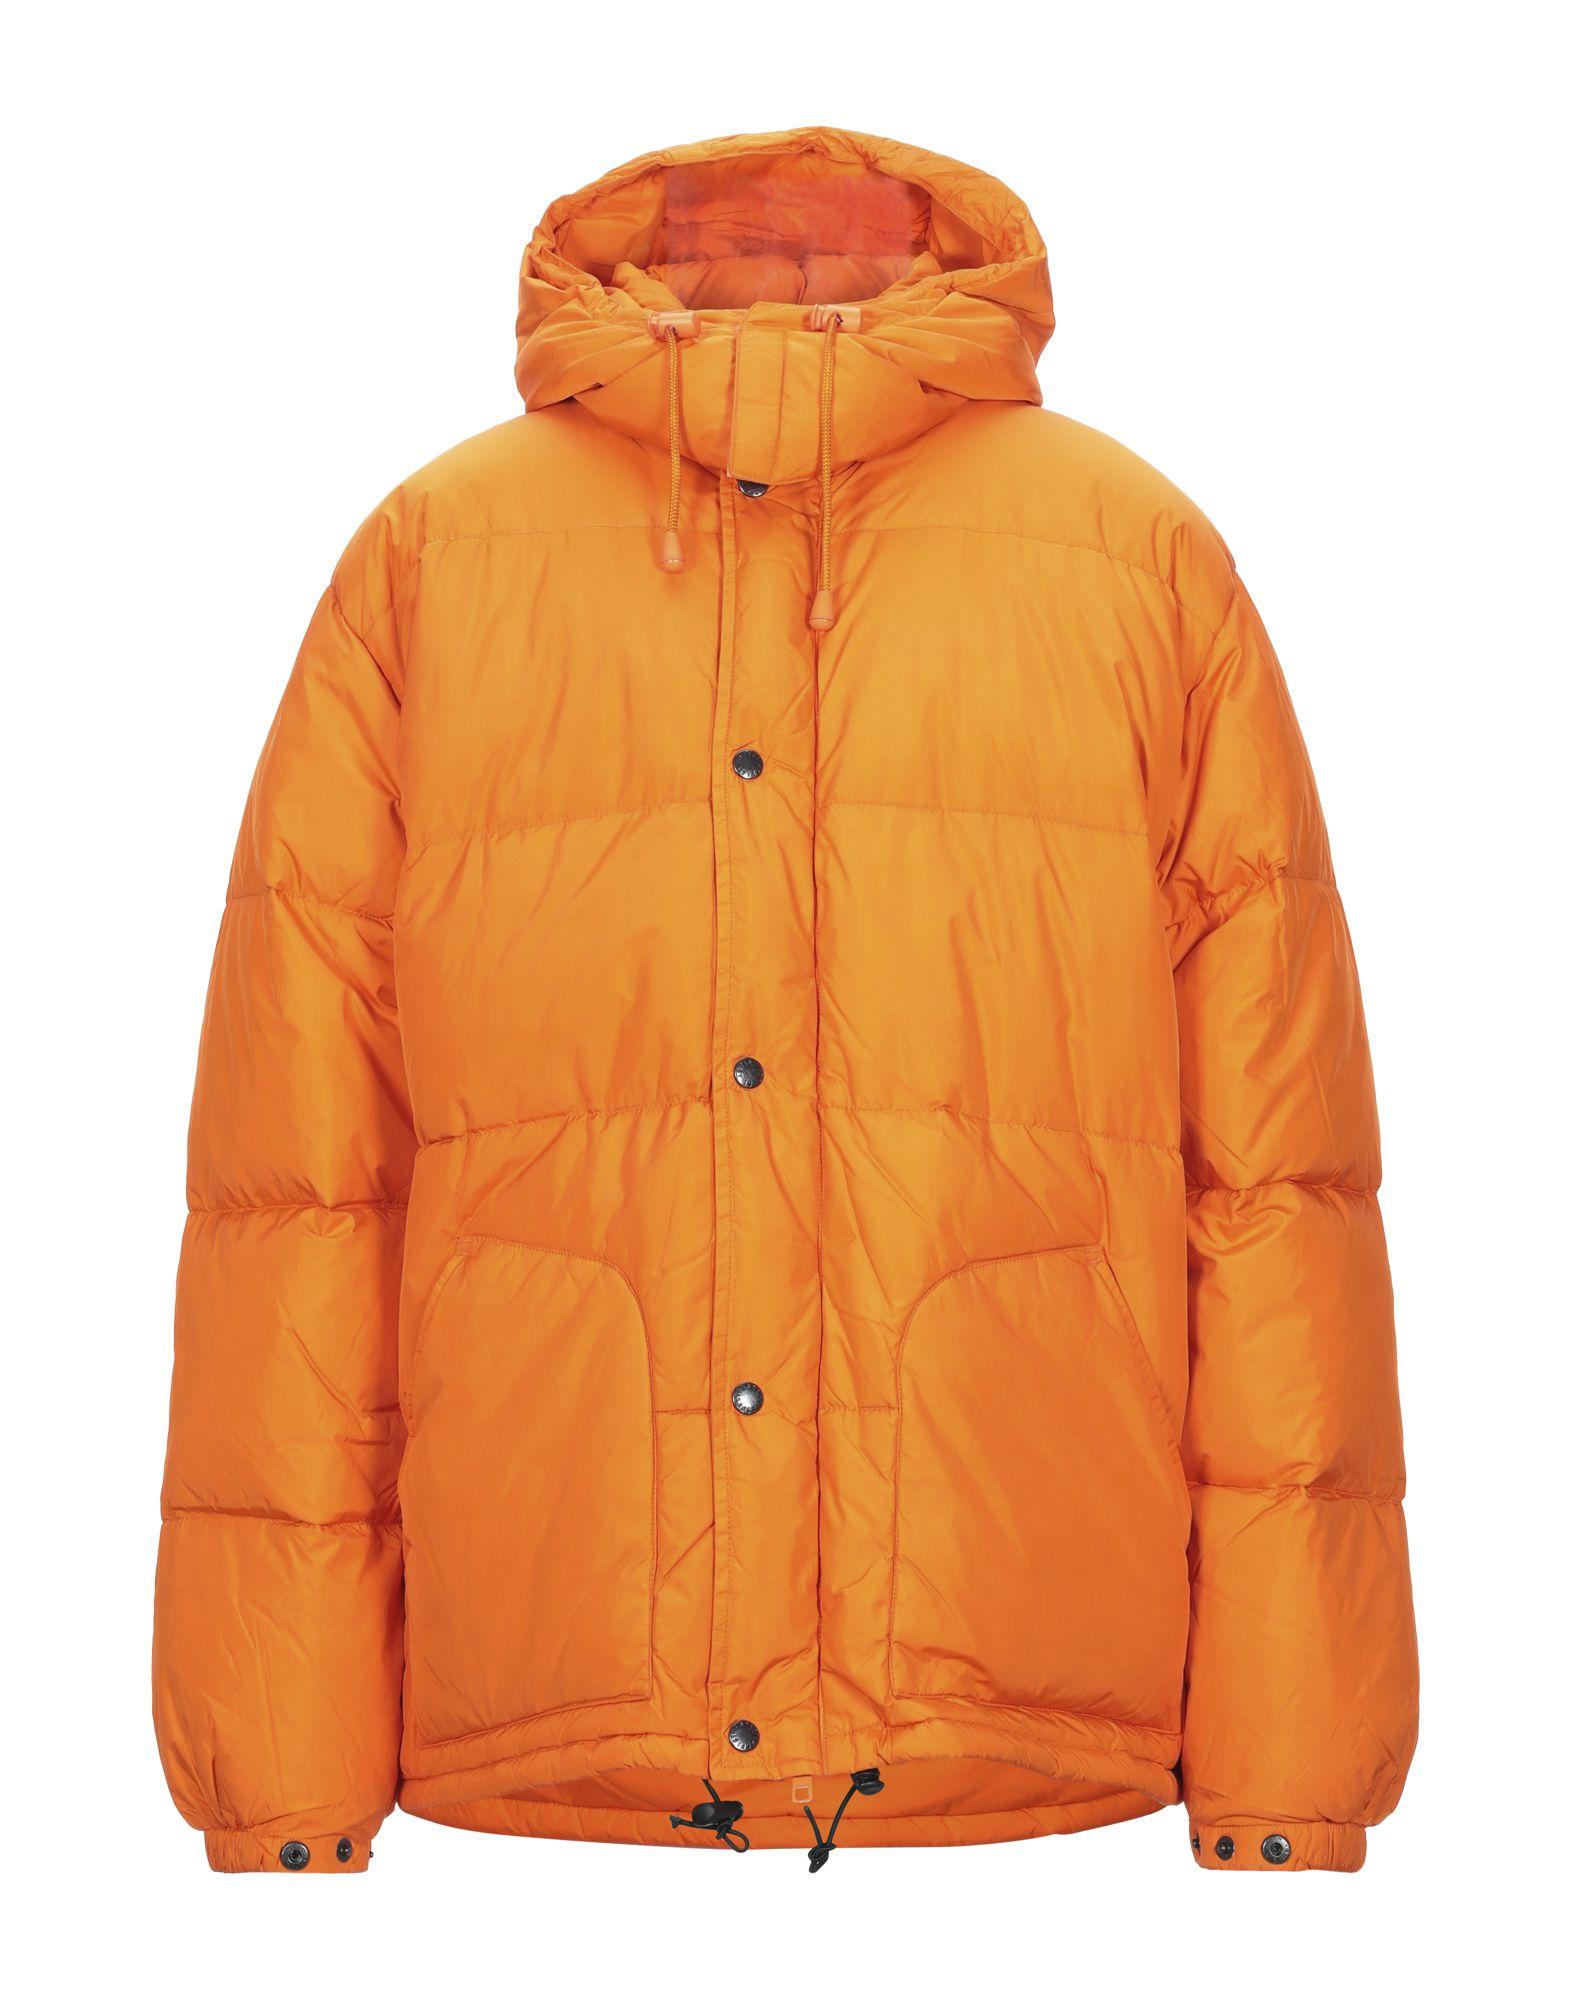 Aspesi Synthetic Down Jacket in Orange for Men - Lyst